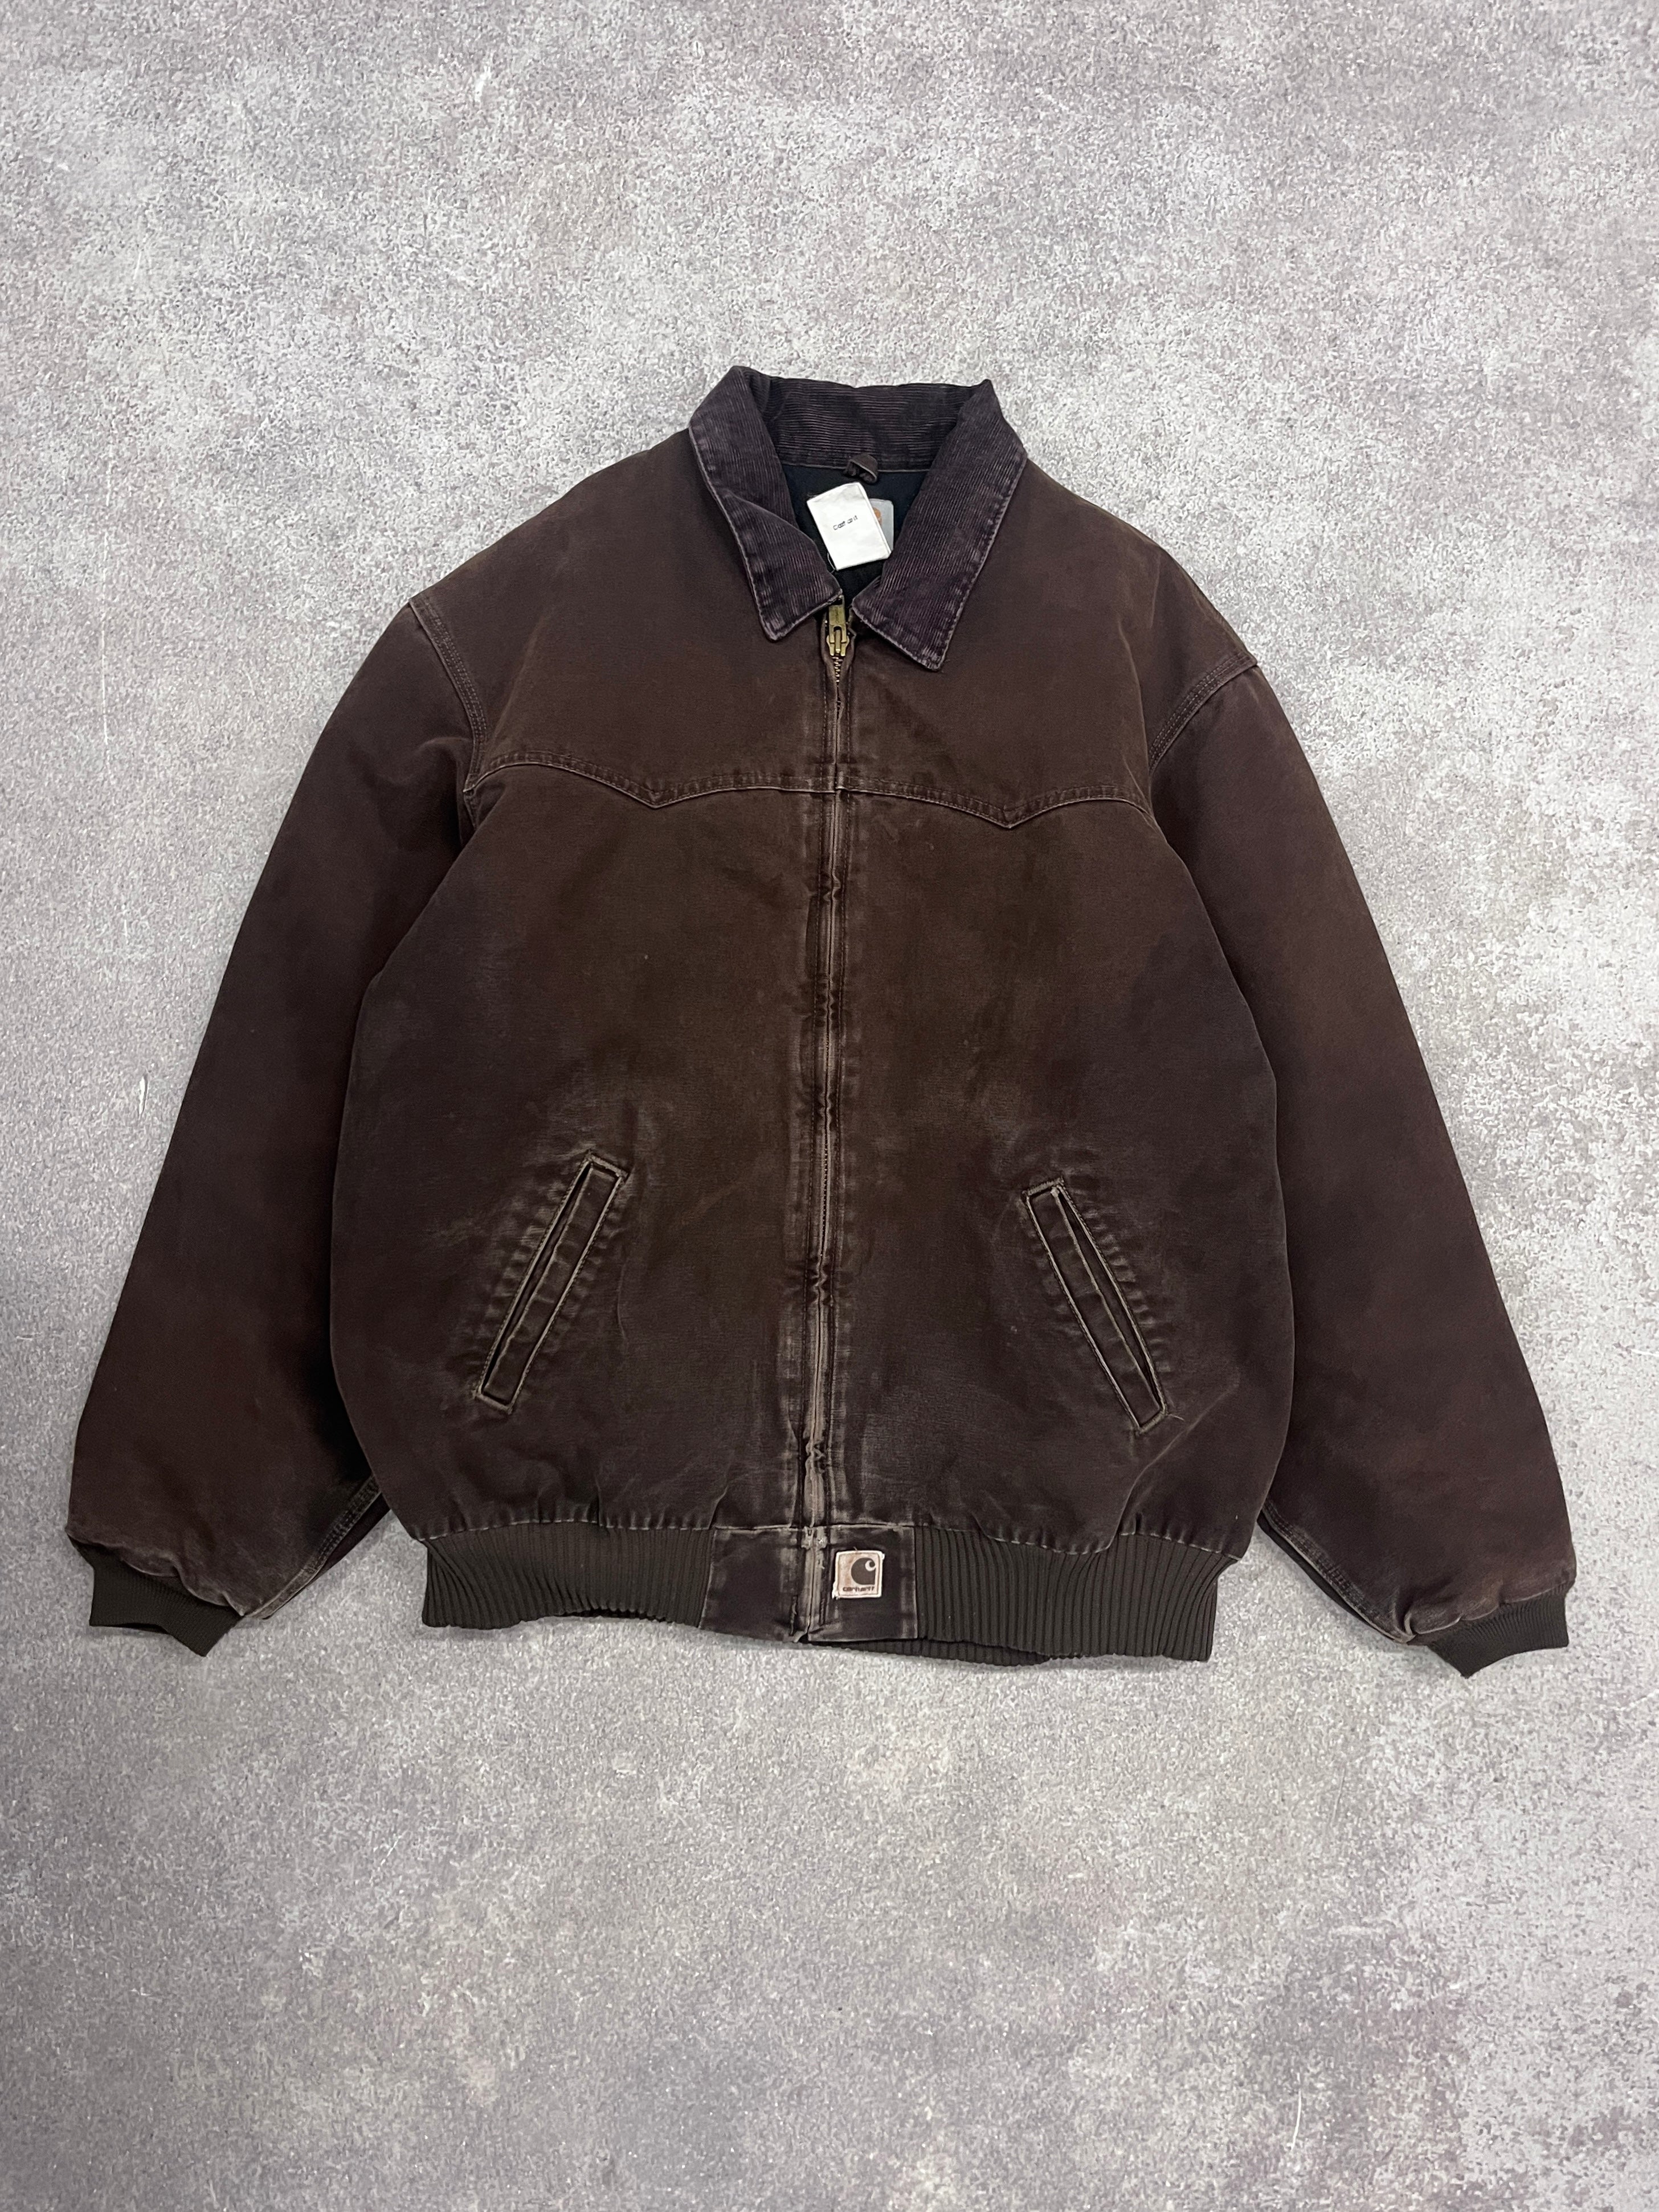 Vintage Workwear Jacket Grey // X-Large - RHAGHOUSE VINTAGE